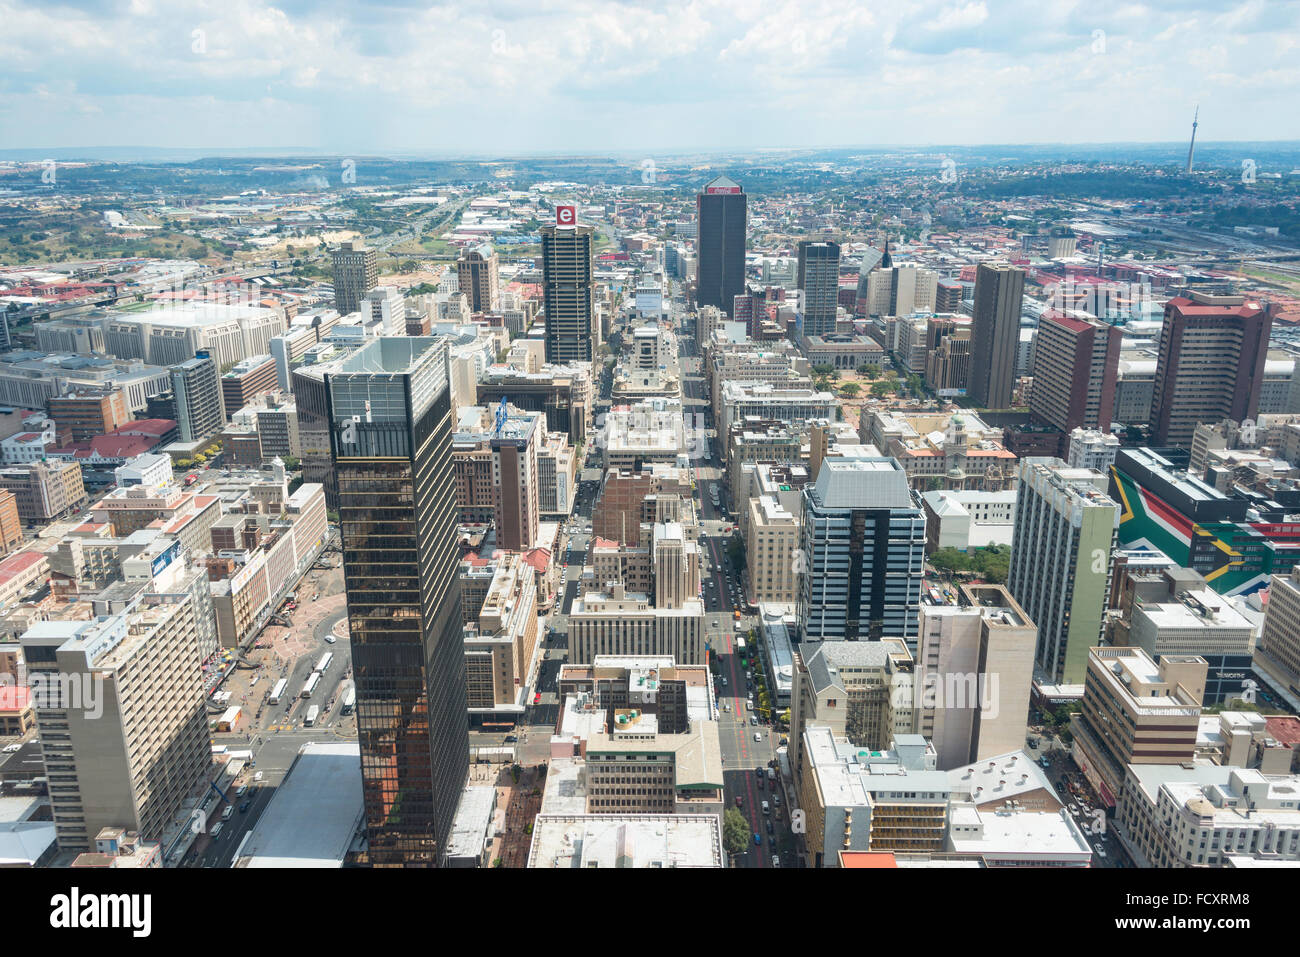 Vista del centro de la ciudad de Carlton Center, Johannesburgo, Ciudad de Johannesburgo, Municipio de la provincia de Gauteng, República de Sudáfrica. Foto de stock